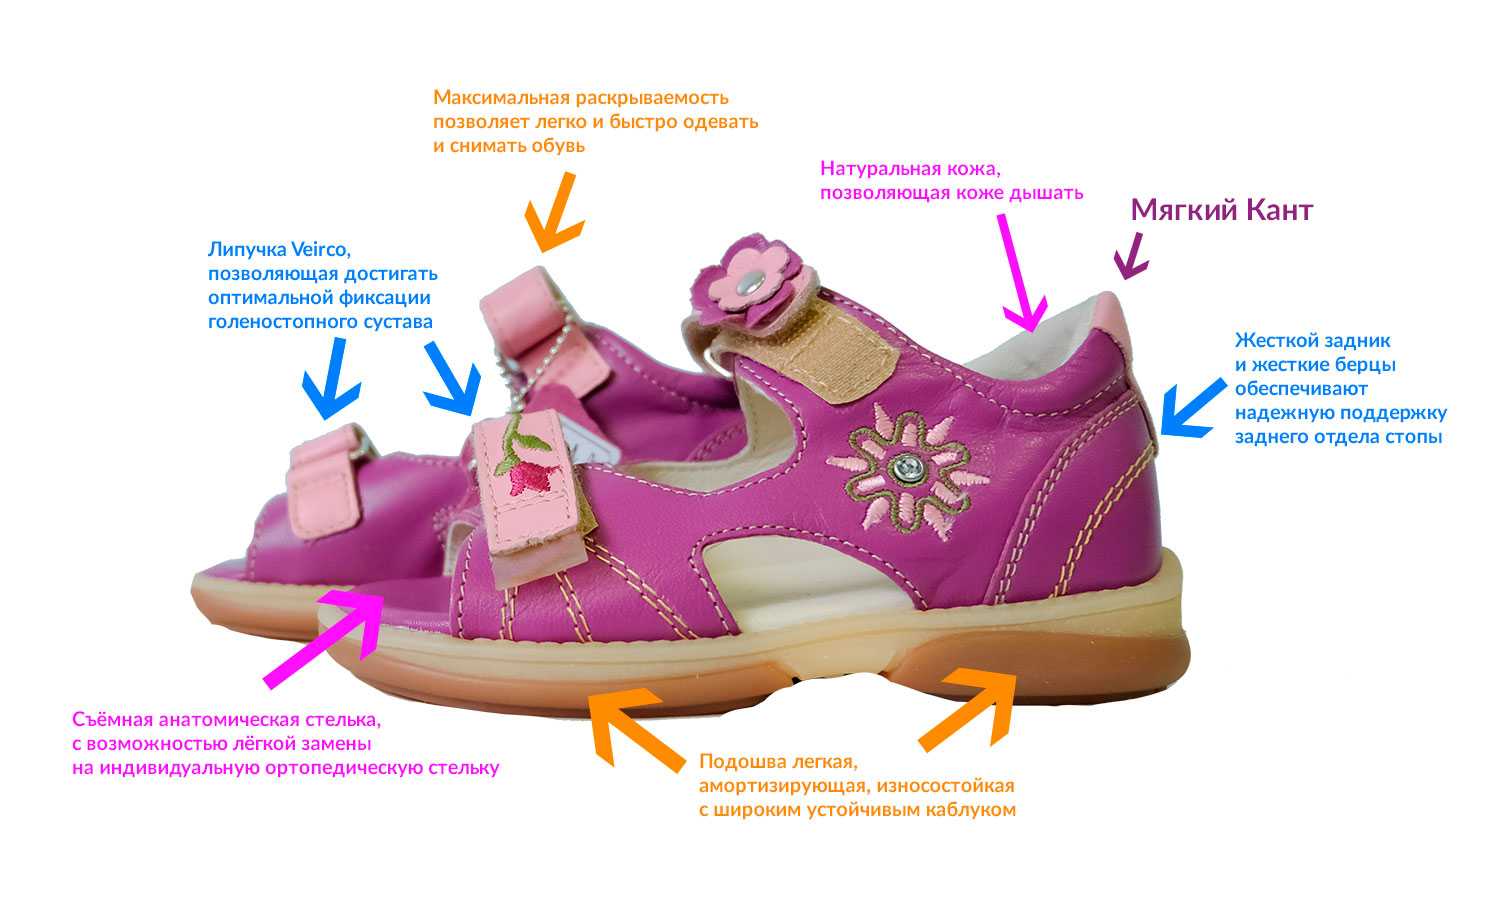 Как подобрать ортопедическую обувь. Правильная обувь для детей. Детская ортопедическая обувь. Правильная ортопедическая обувь. Ортопедические обув для детей.